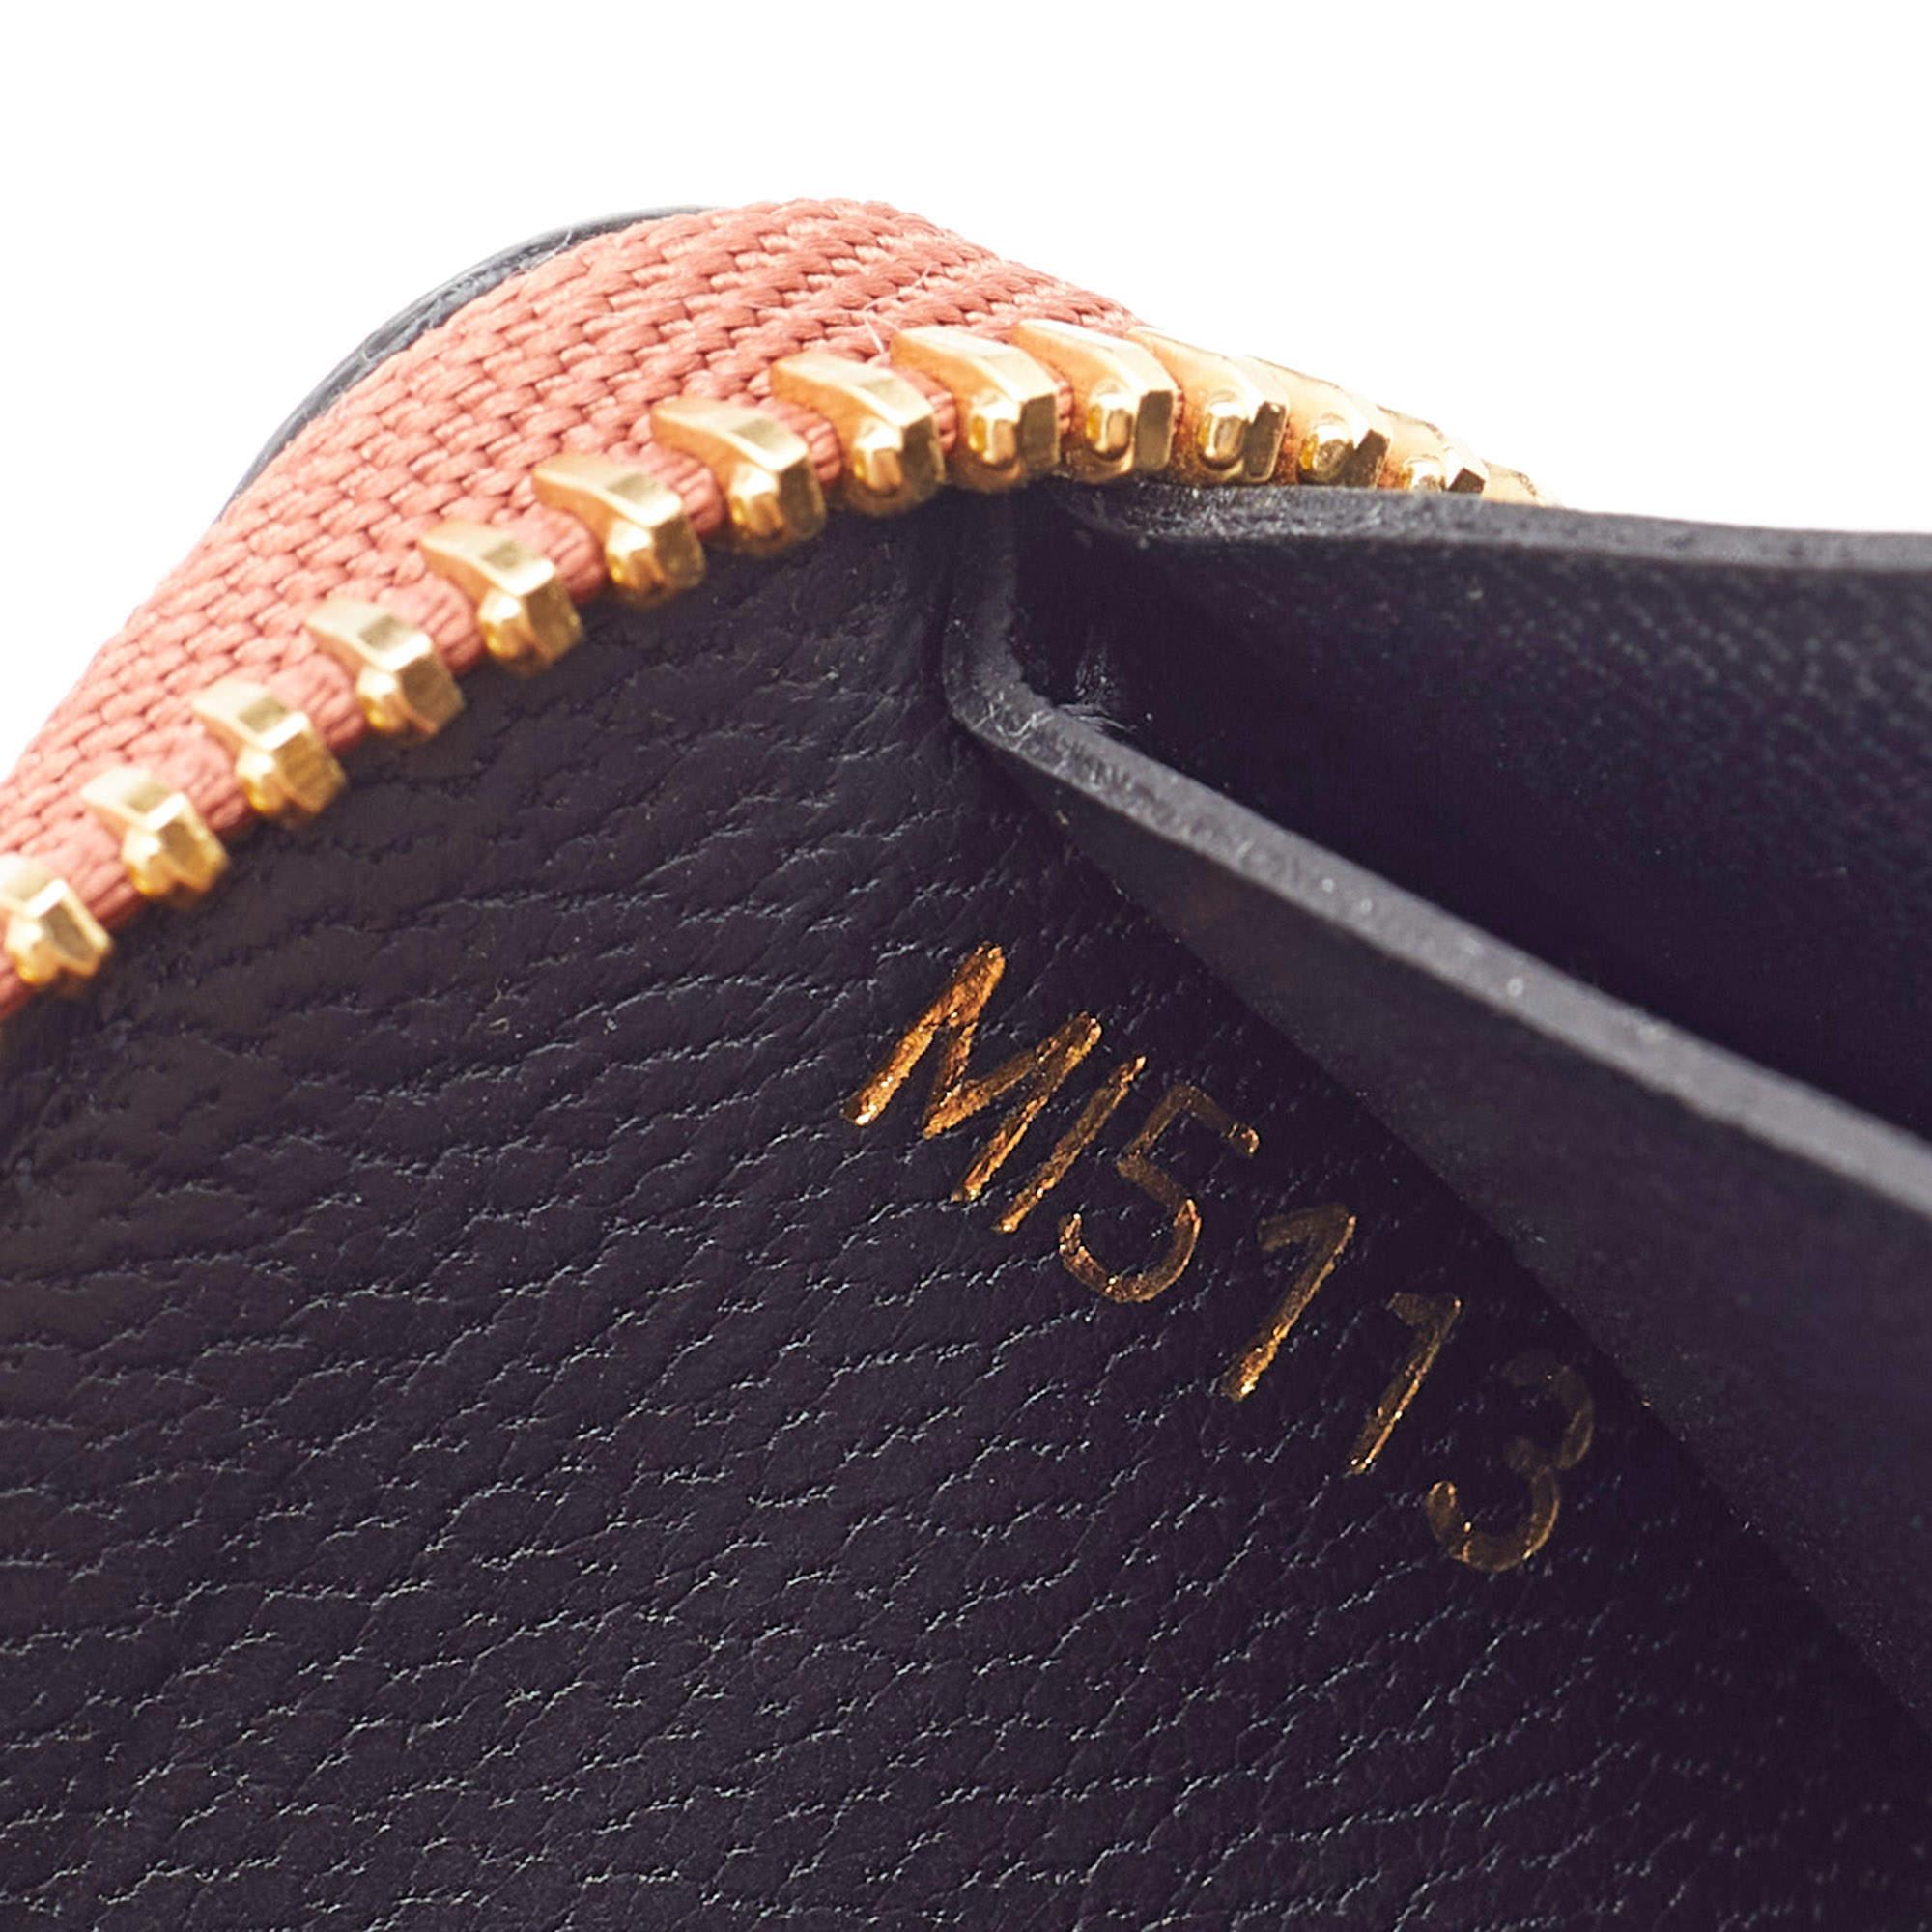 Louis Vuitton Brick Red Leather Article De Voyage Zippy Wallet 6